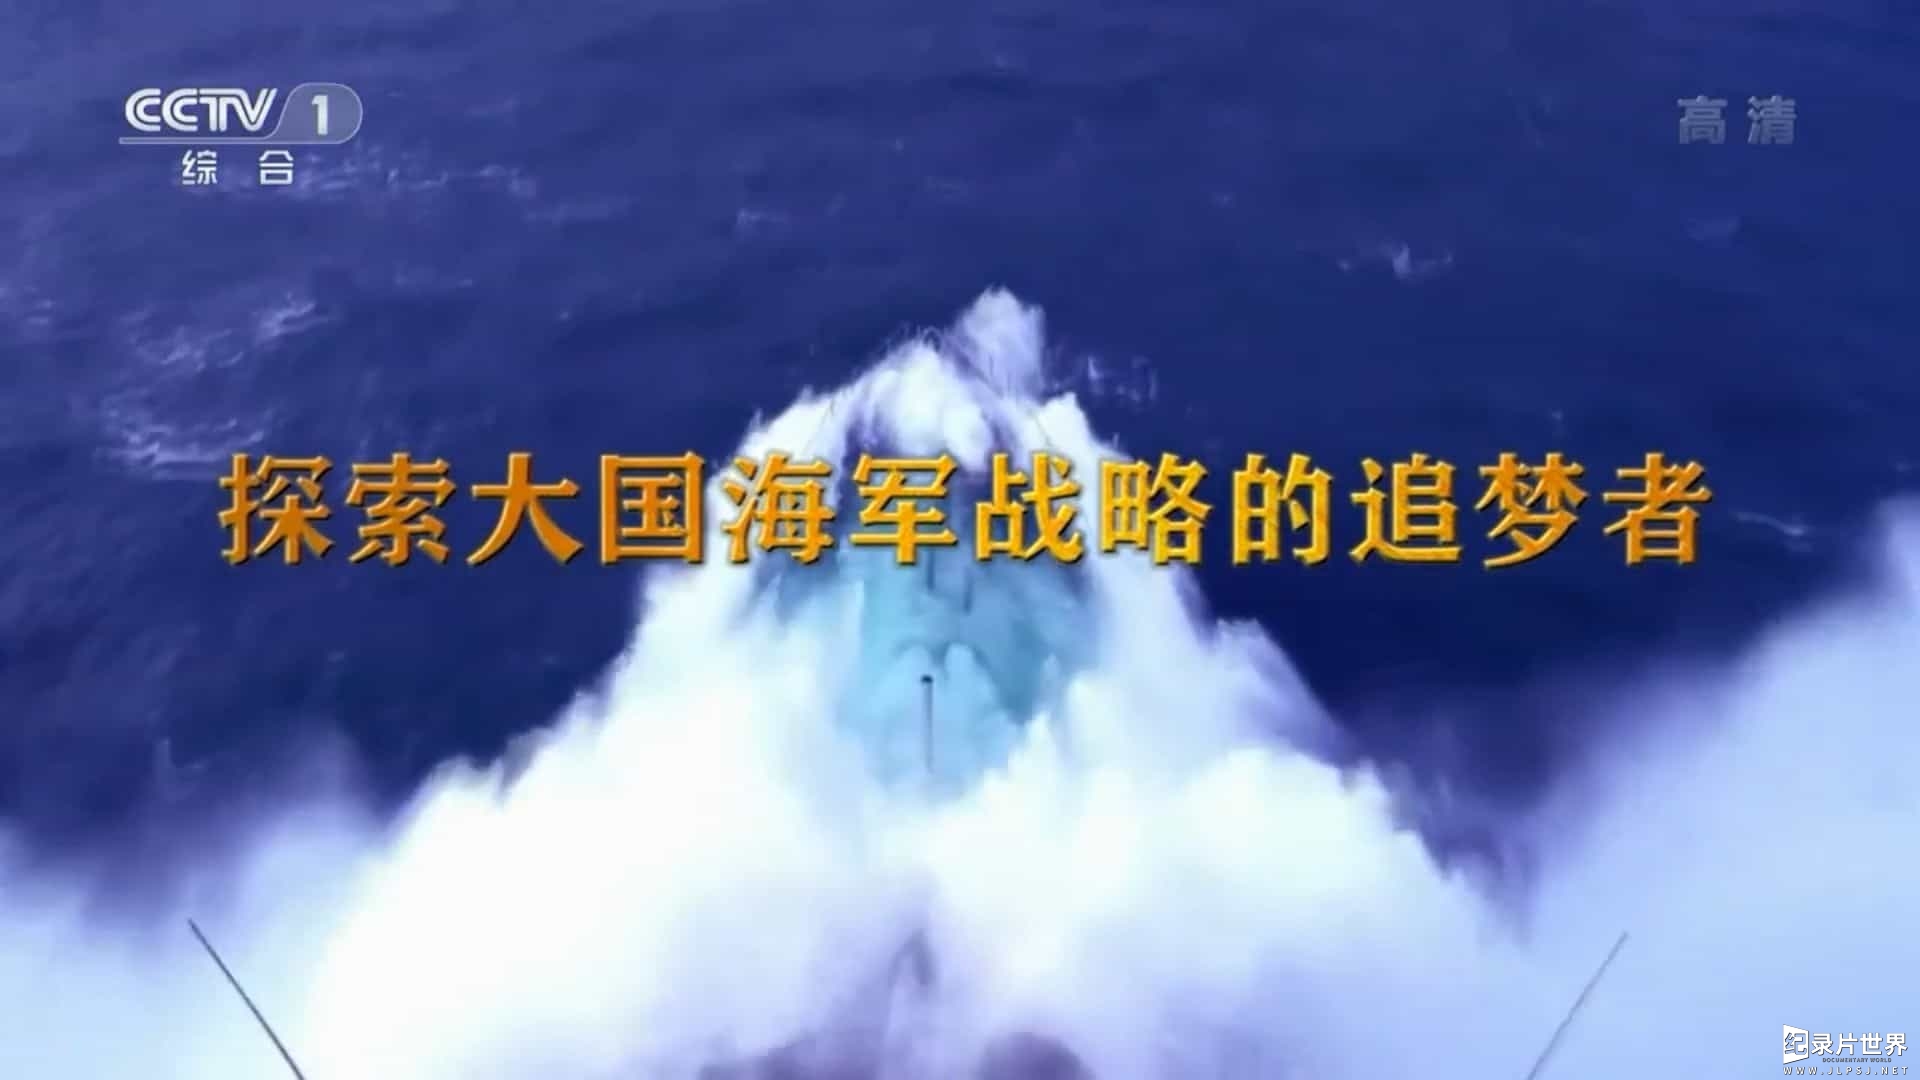 央视文献纪录片《刘华清 2016》全9集